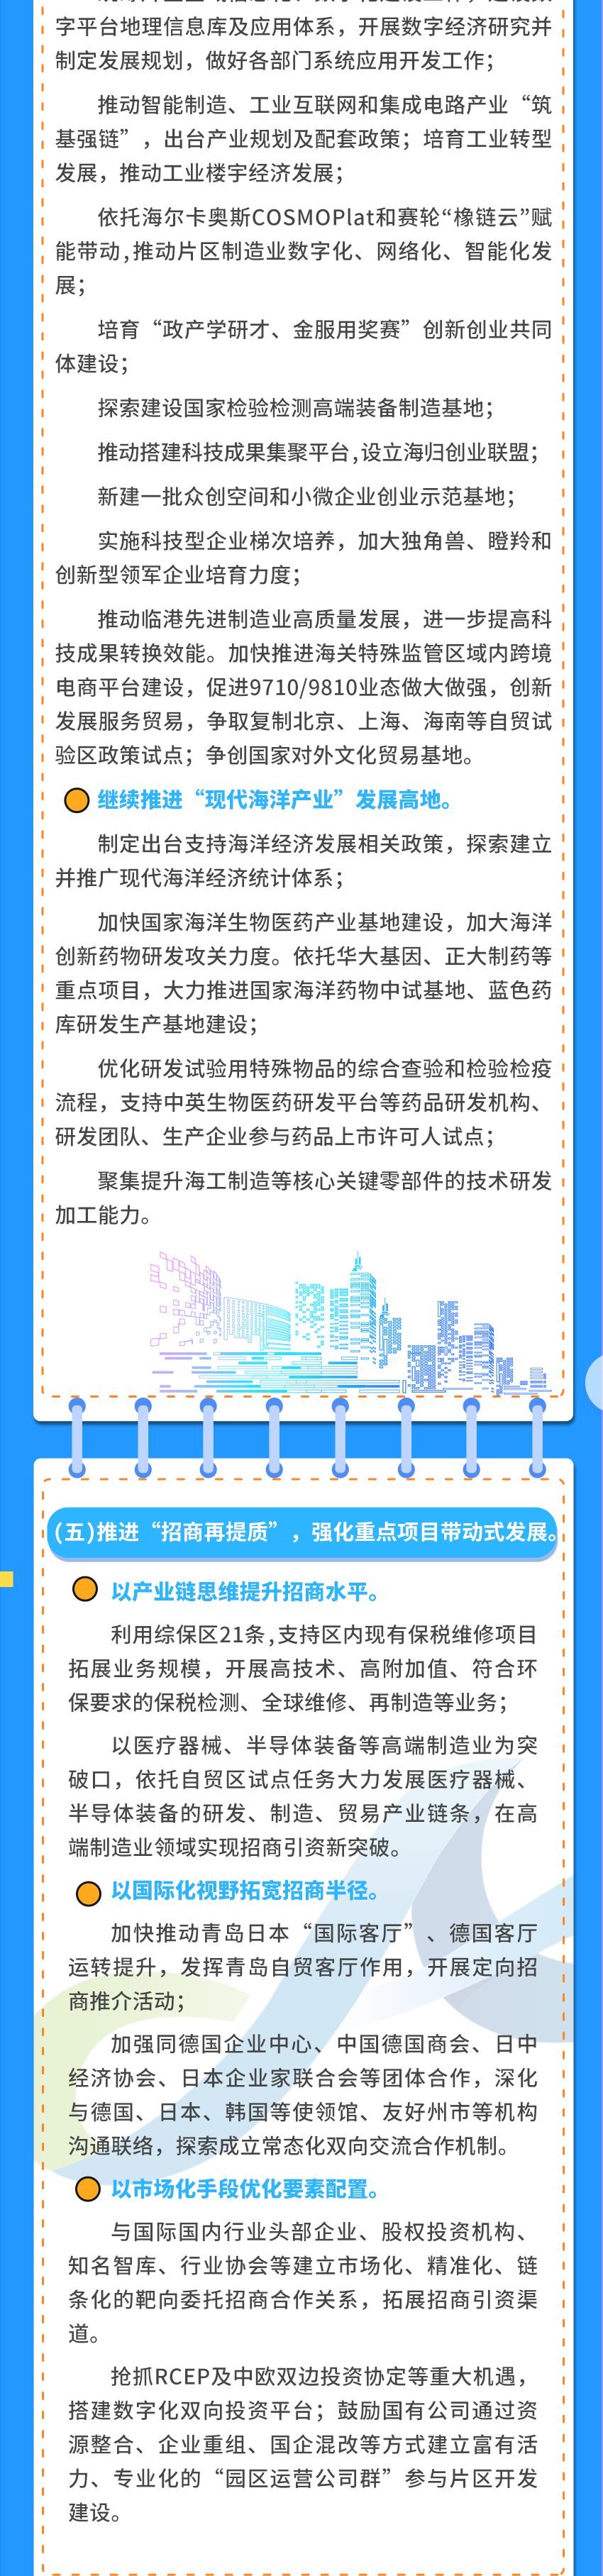 中国(山东)自由贸易试验区青岛片区2021年经济发展计划发布